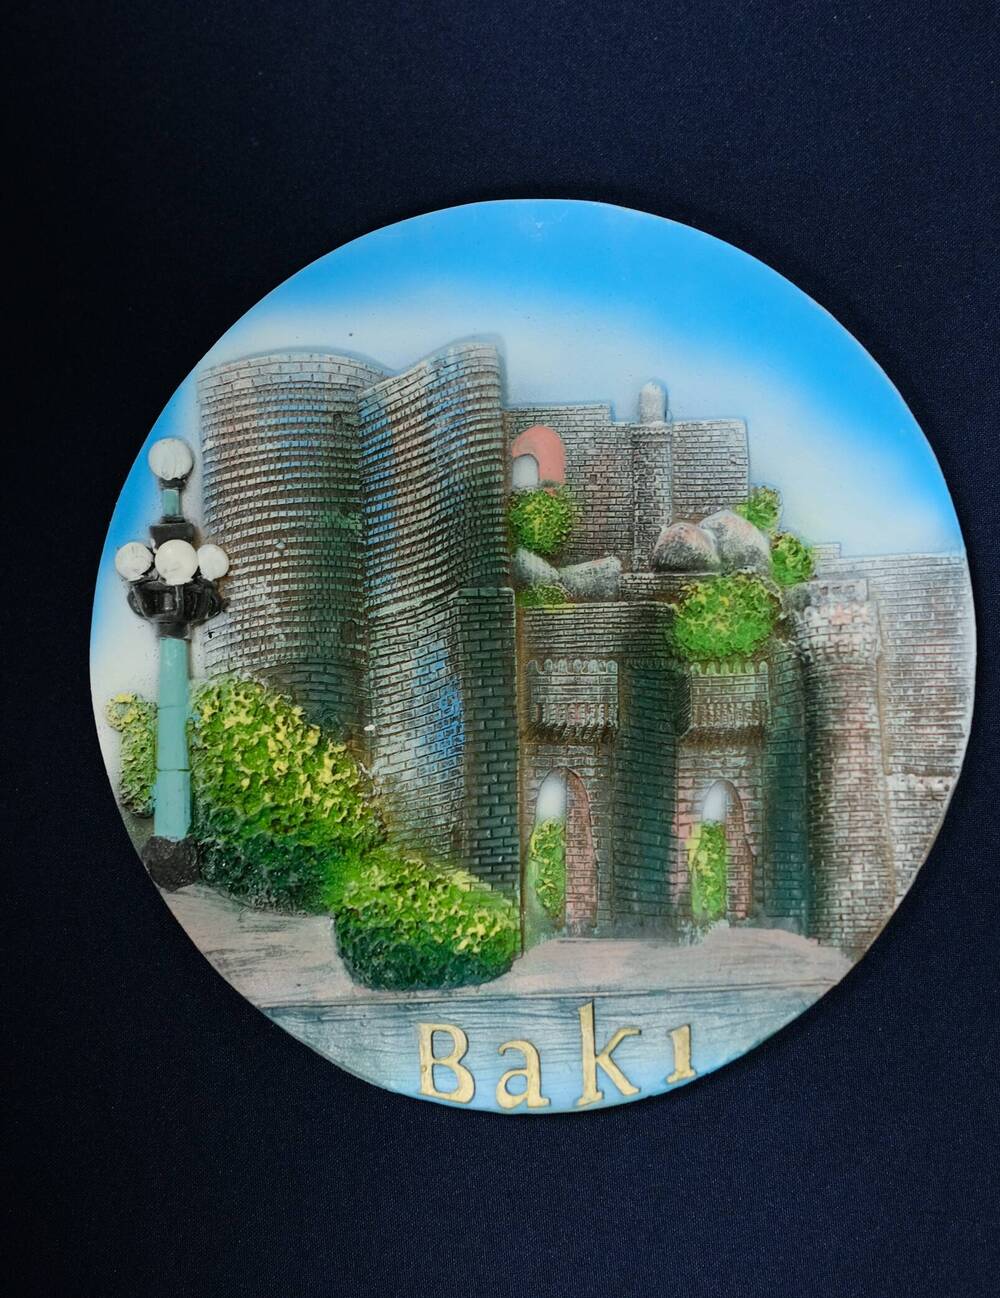 Тарелка-сувенирная круглая с изображением старинной крепости г.Баку.Внизу тарелки надпись Baki